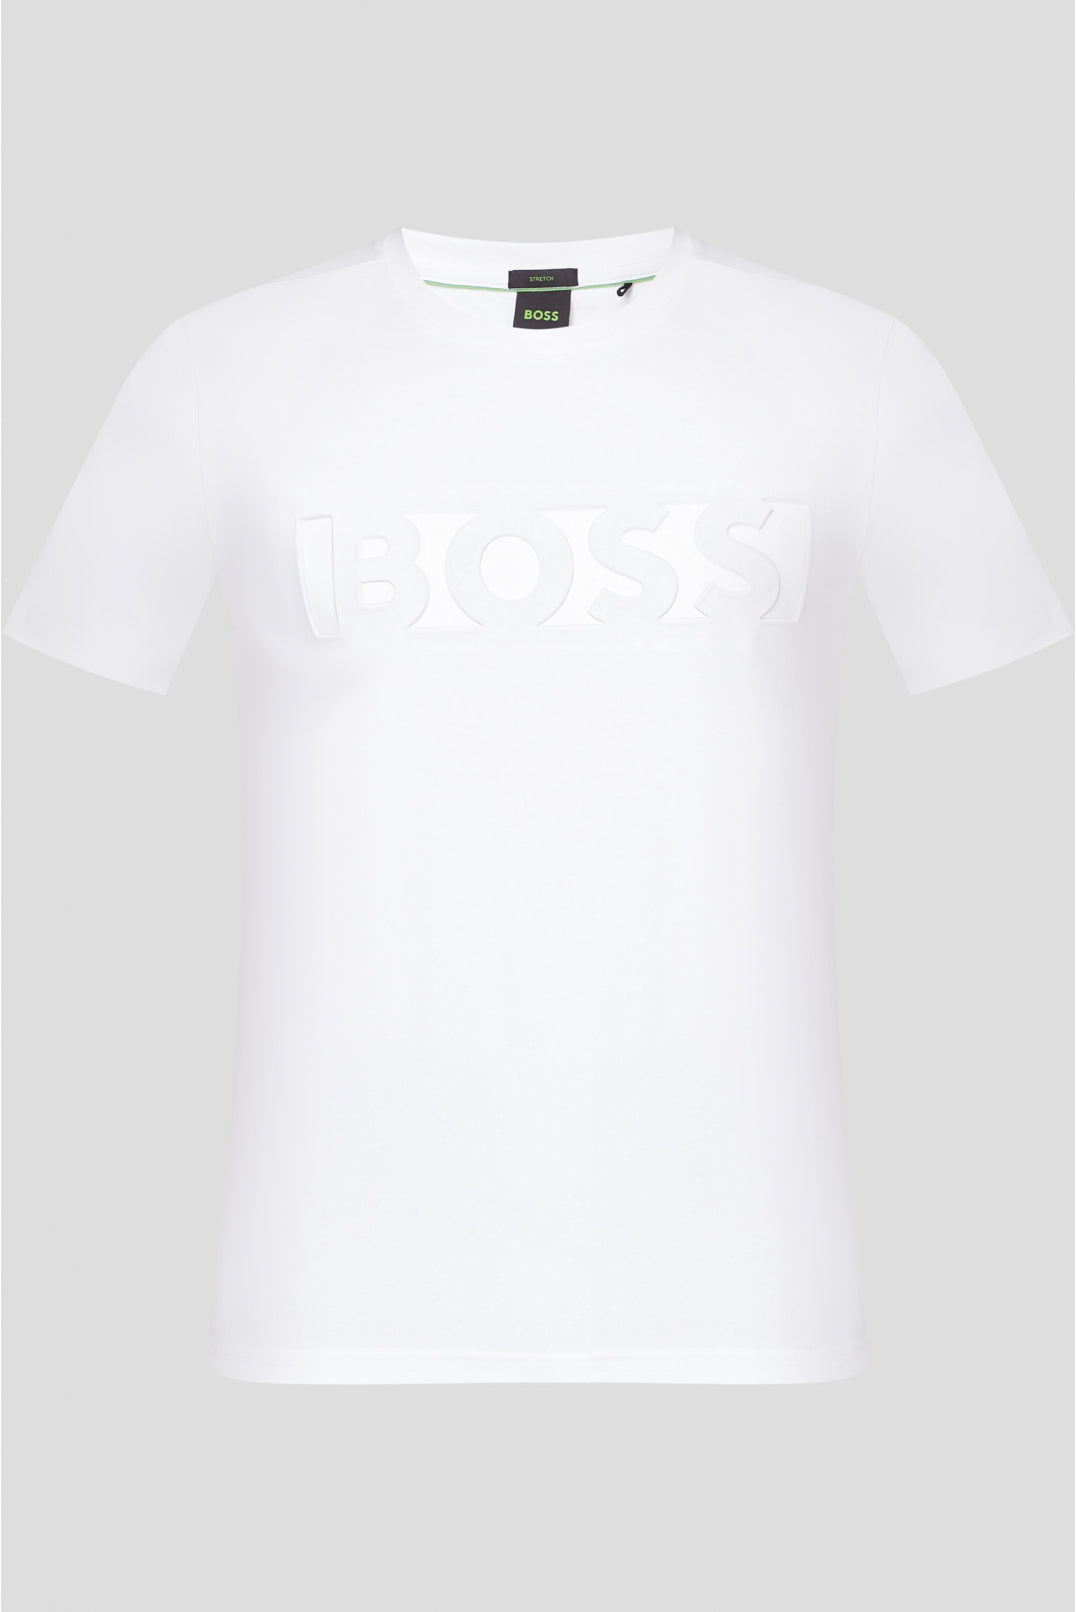 Camiseta Boss White